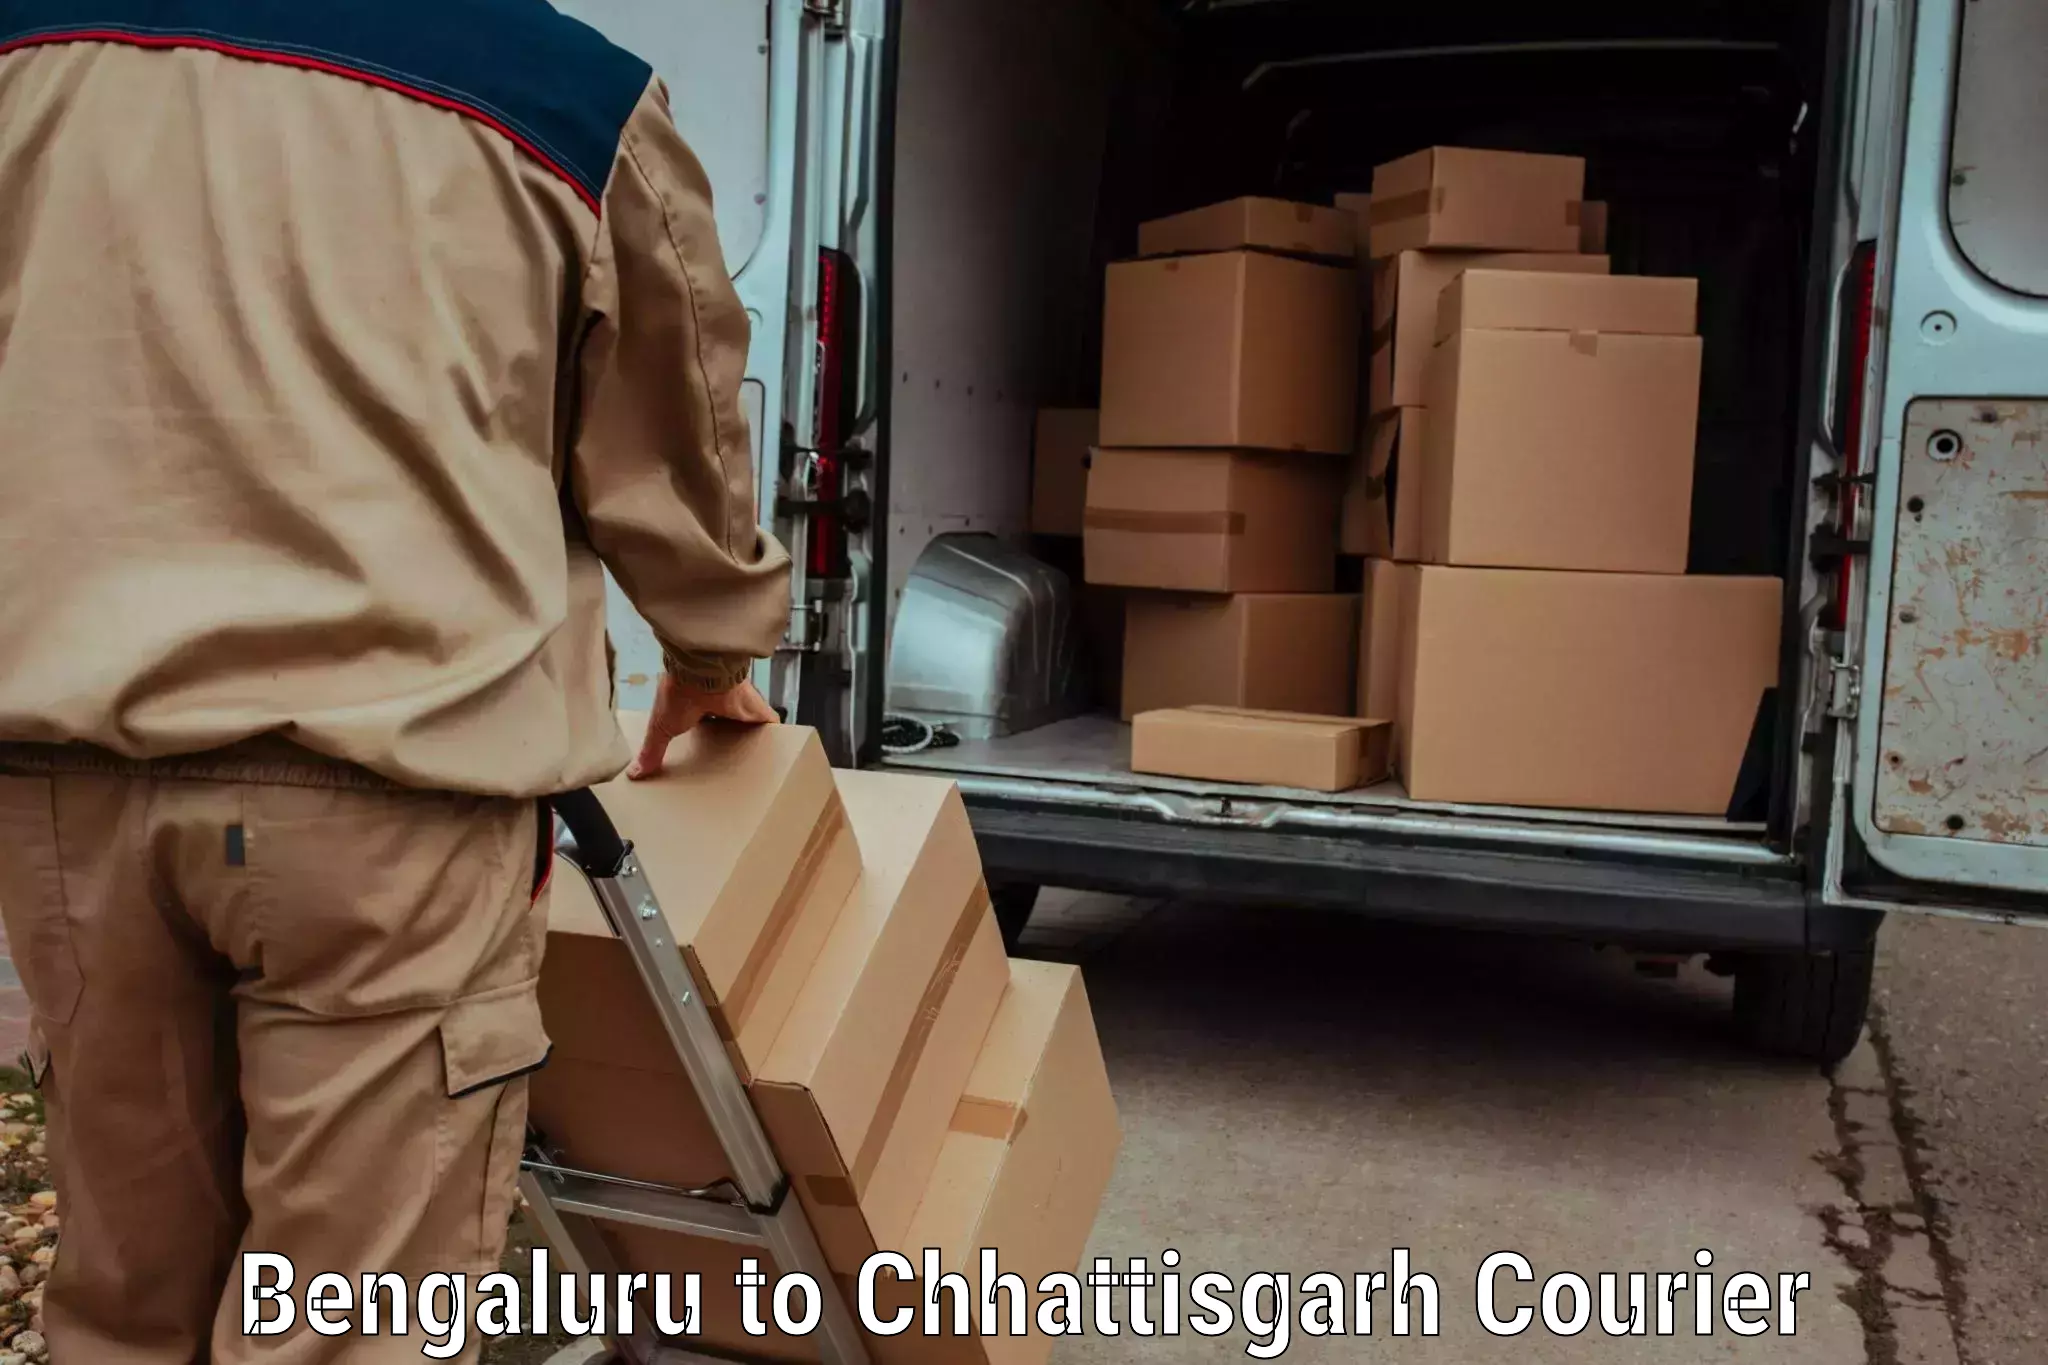 Smart courier technologies Bengaluru to Raigarh Chhattisgarh